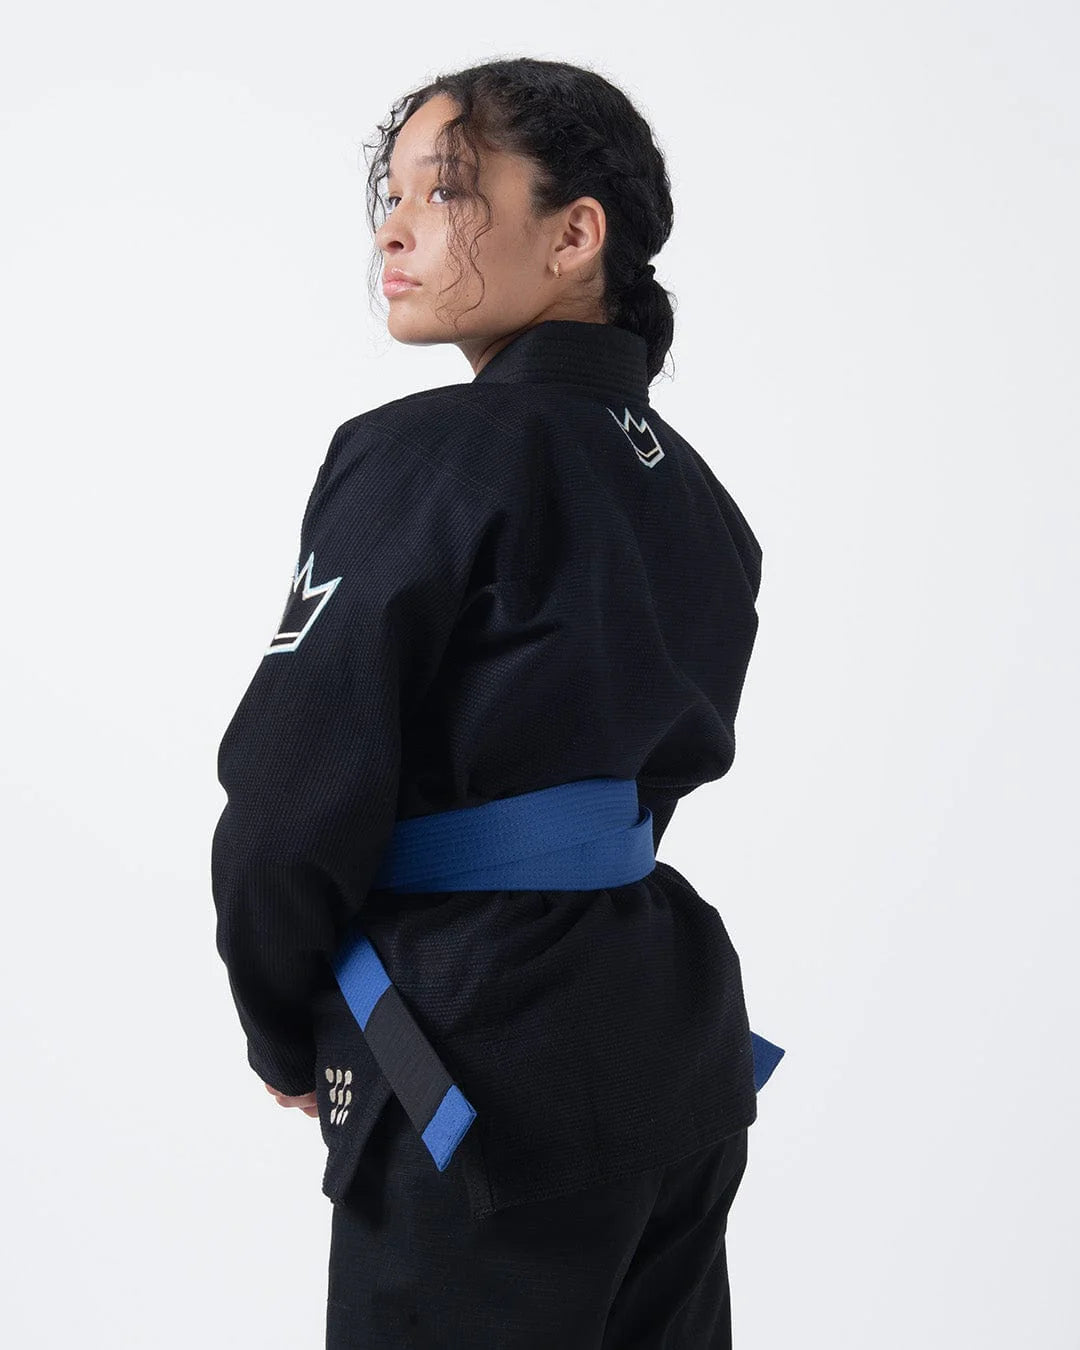 KINGZ Nano 3.0 Womens Jiu Jitsu Gi - Schwarz